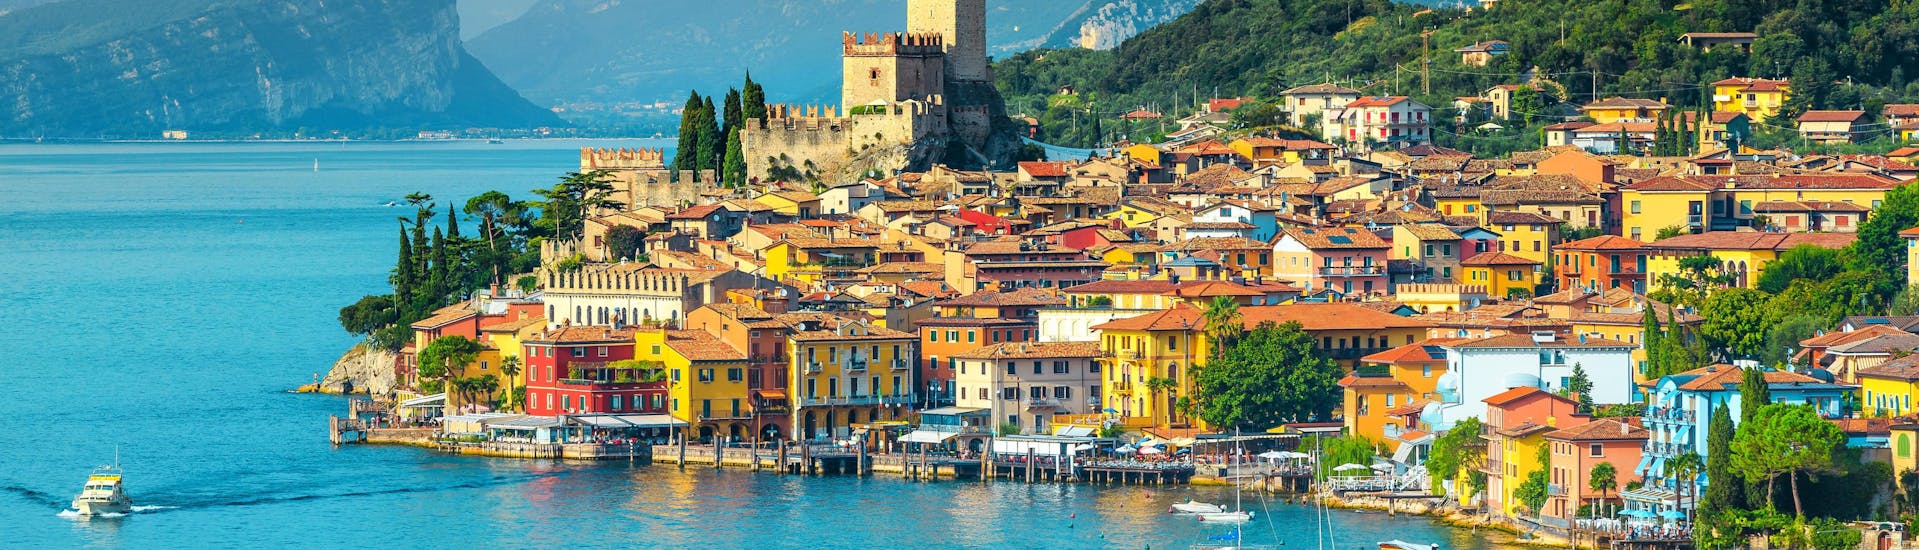 La ville de Malcesine, au bord du lac de Garde, en Italie, où l'on peut réserver en ligne des excursions en bateau.